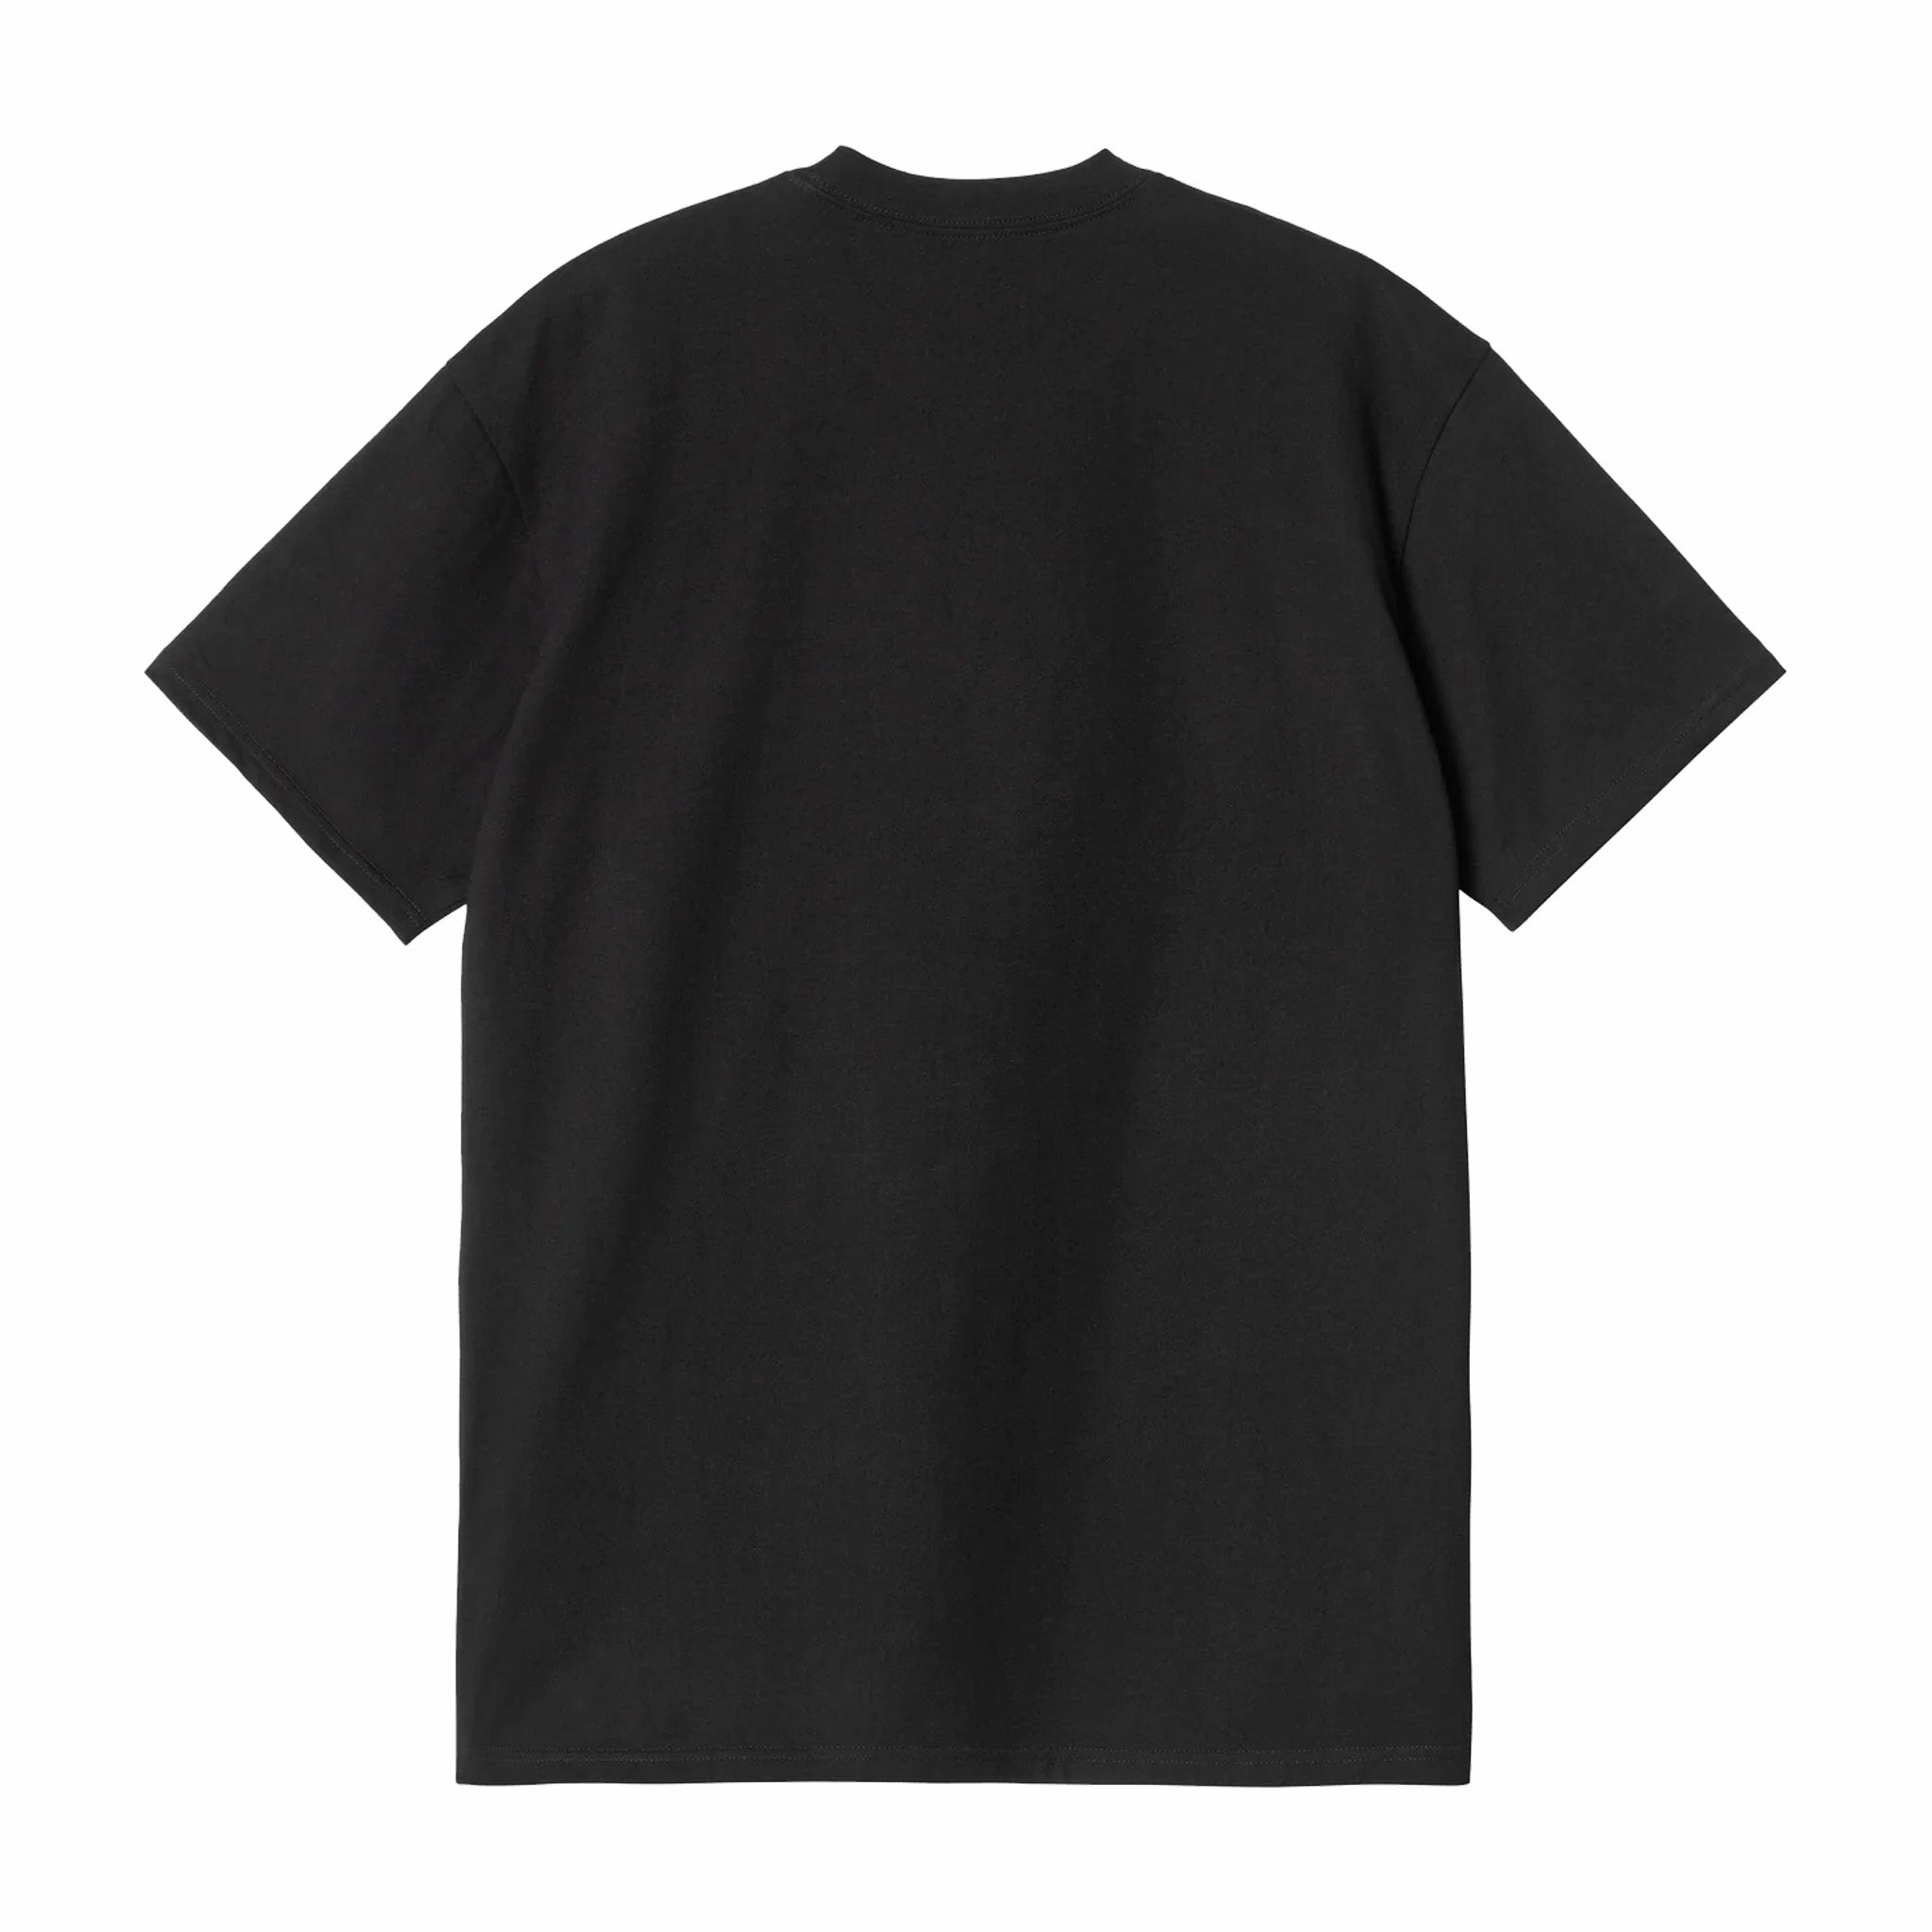 Carhartt WIP S/S Pocket Heart T-Shirt (Black) - August Shop